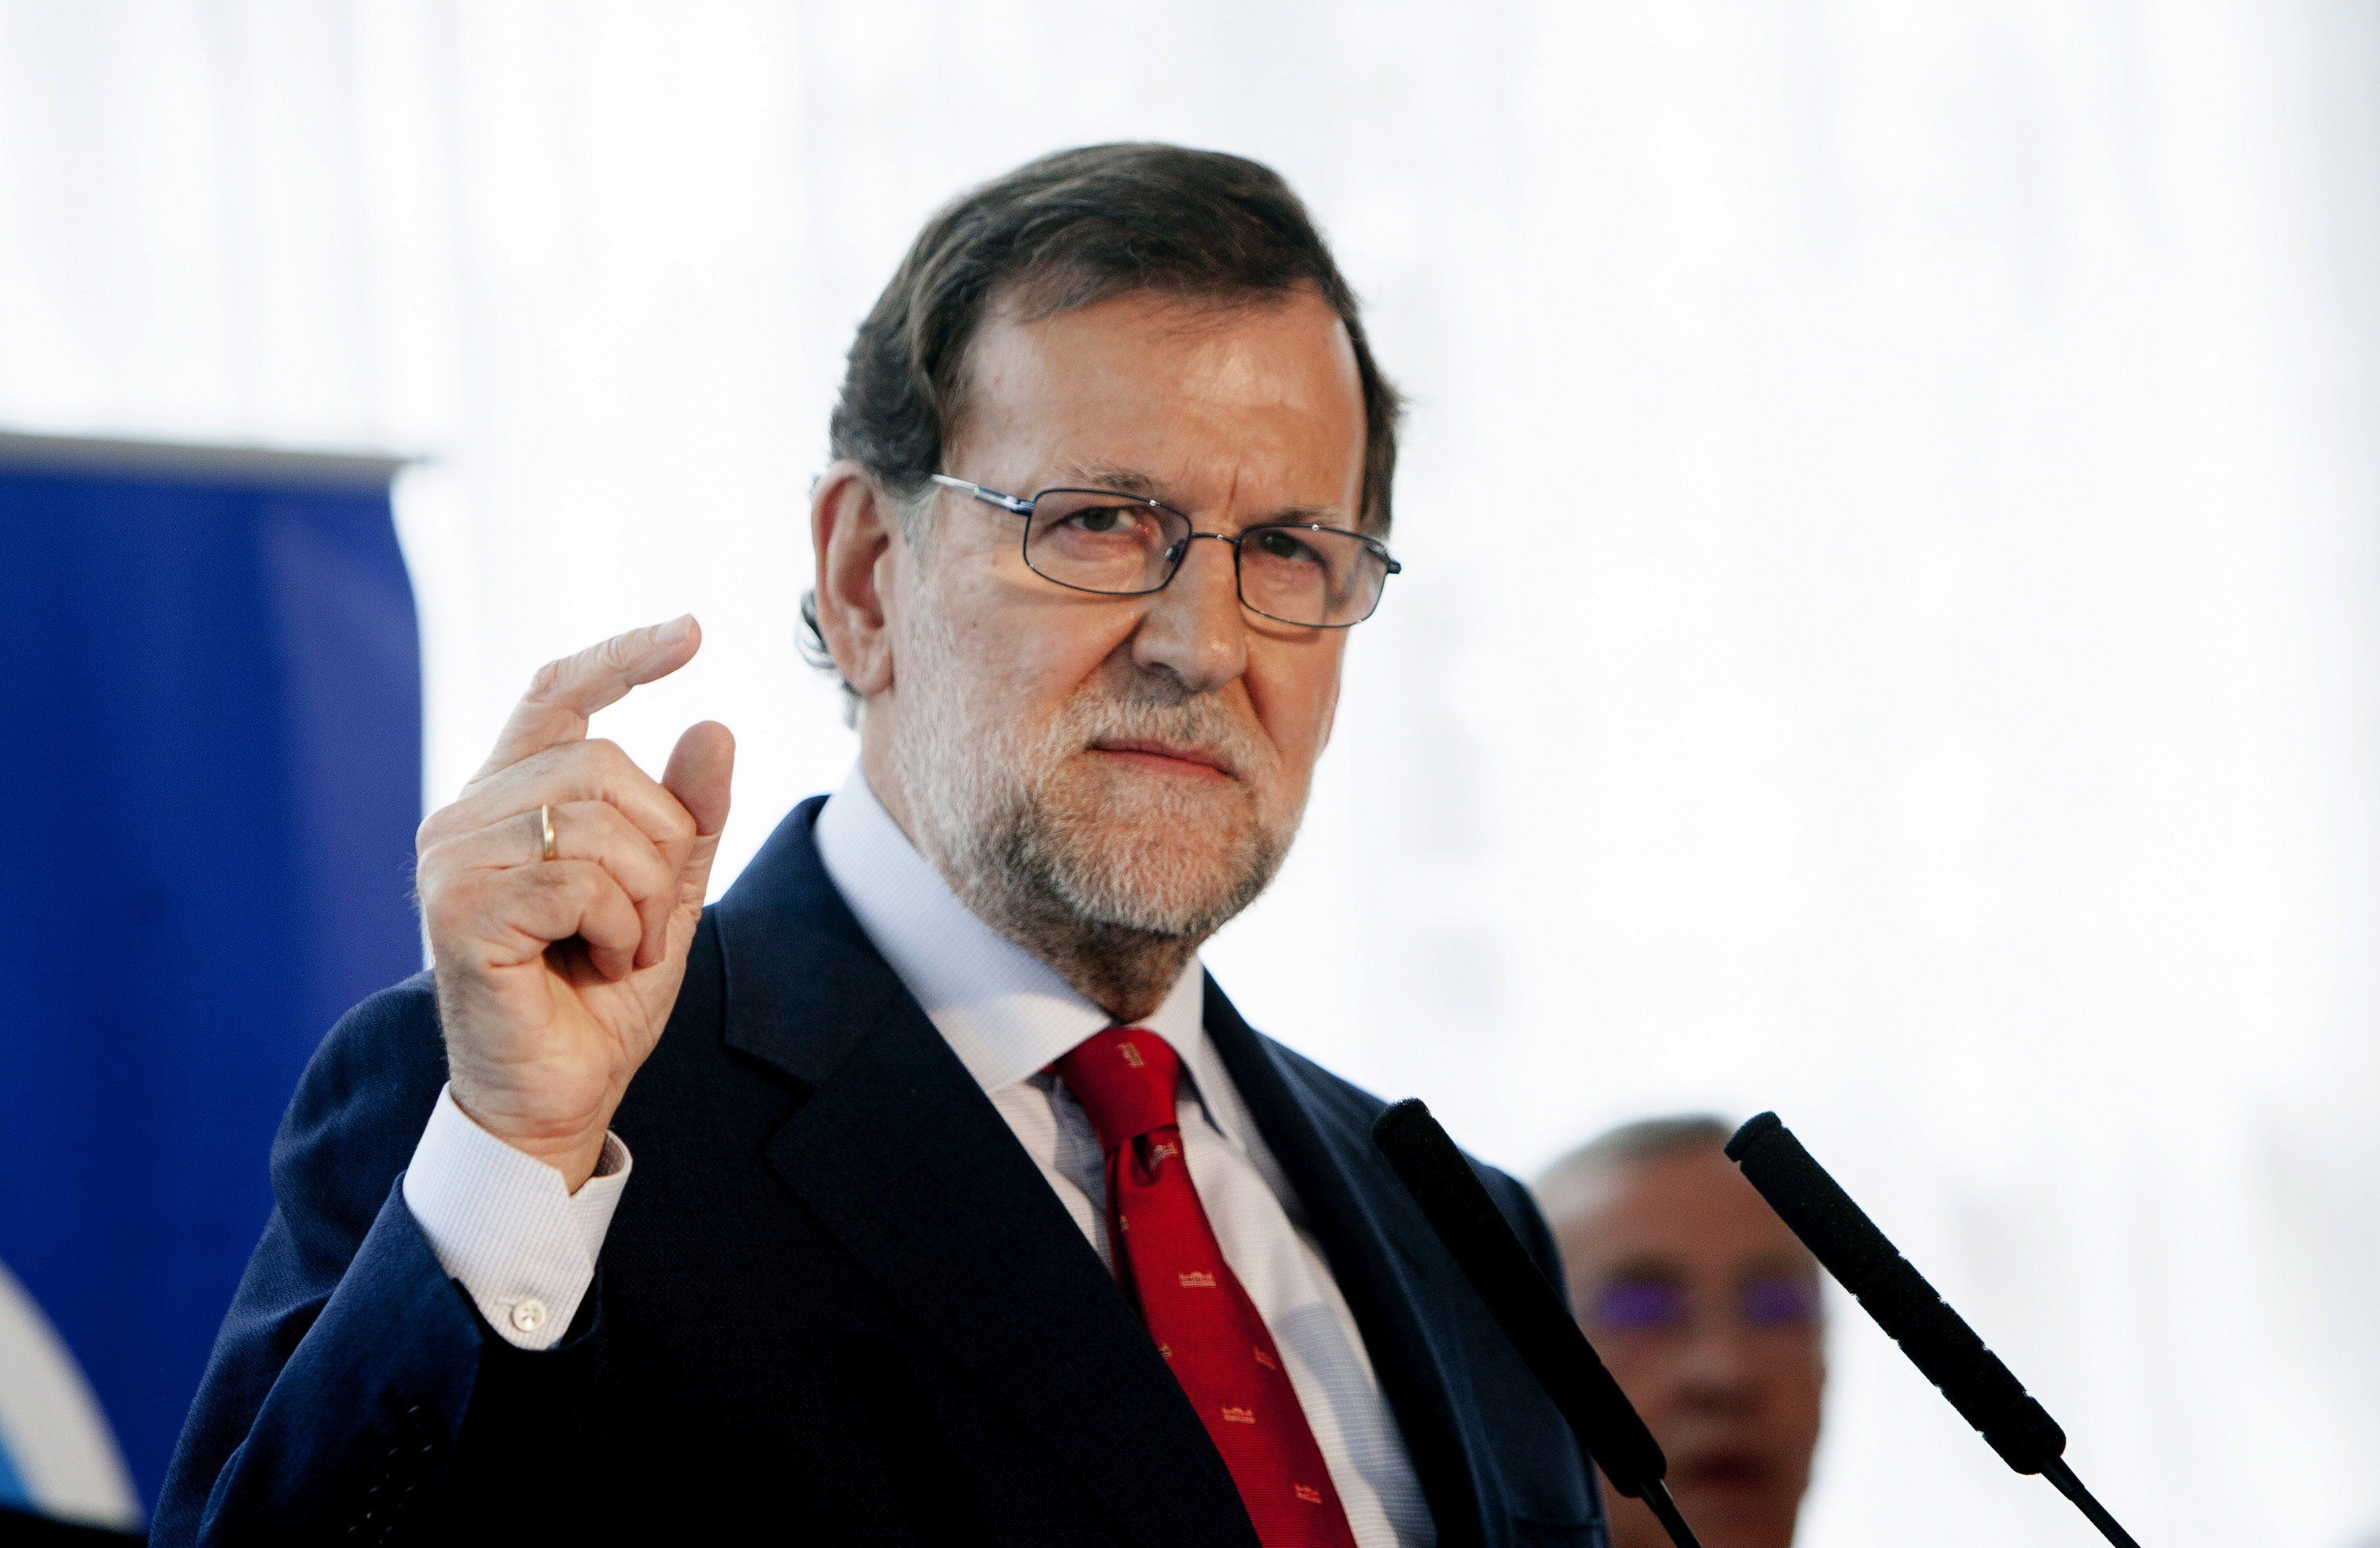 Nuevo aviso del Banco de España a Rajoy, 48 horas antes de la campaña